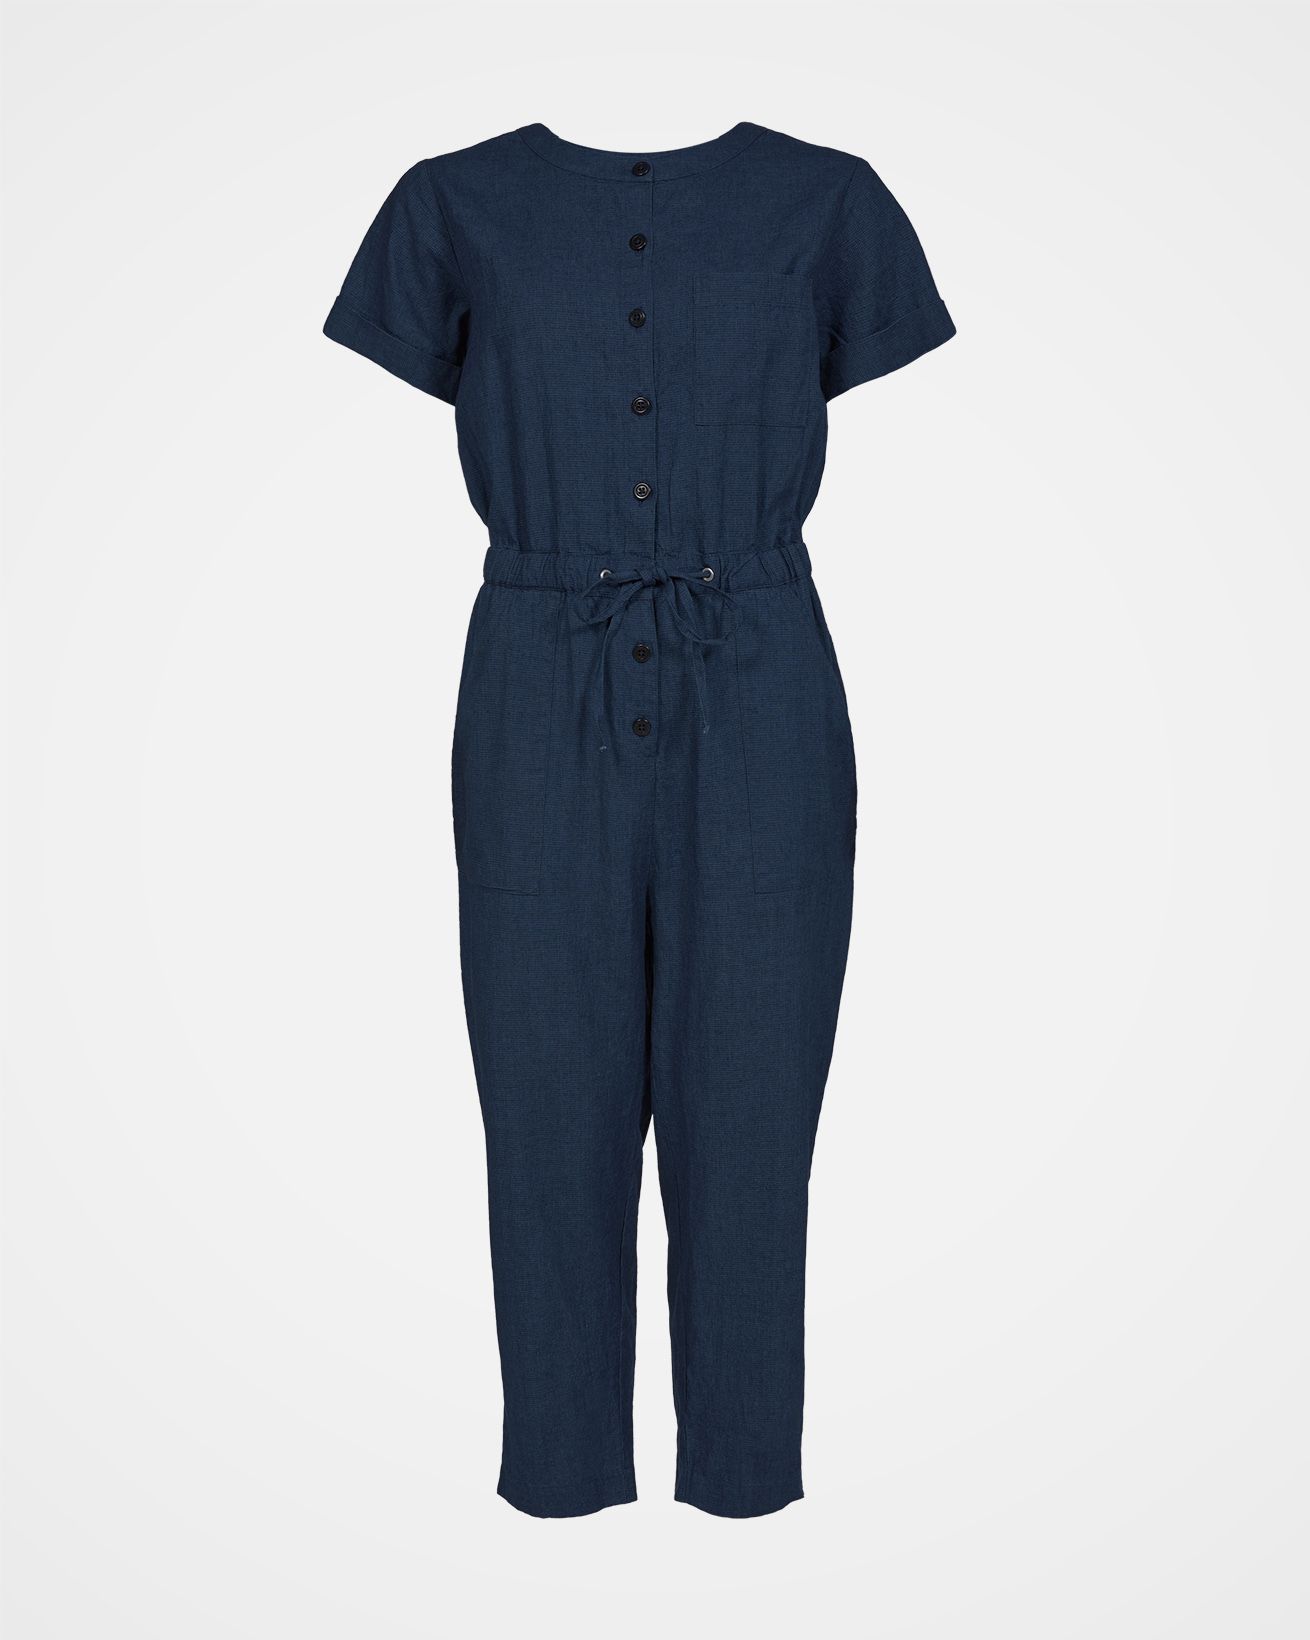 Linen / Cotton Jumpsuit / Navy / 18